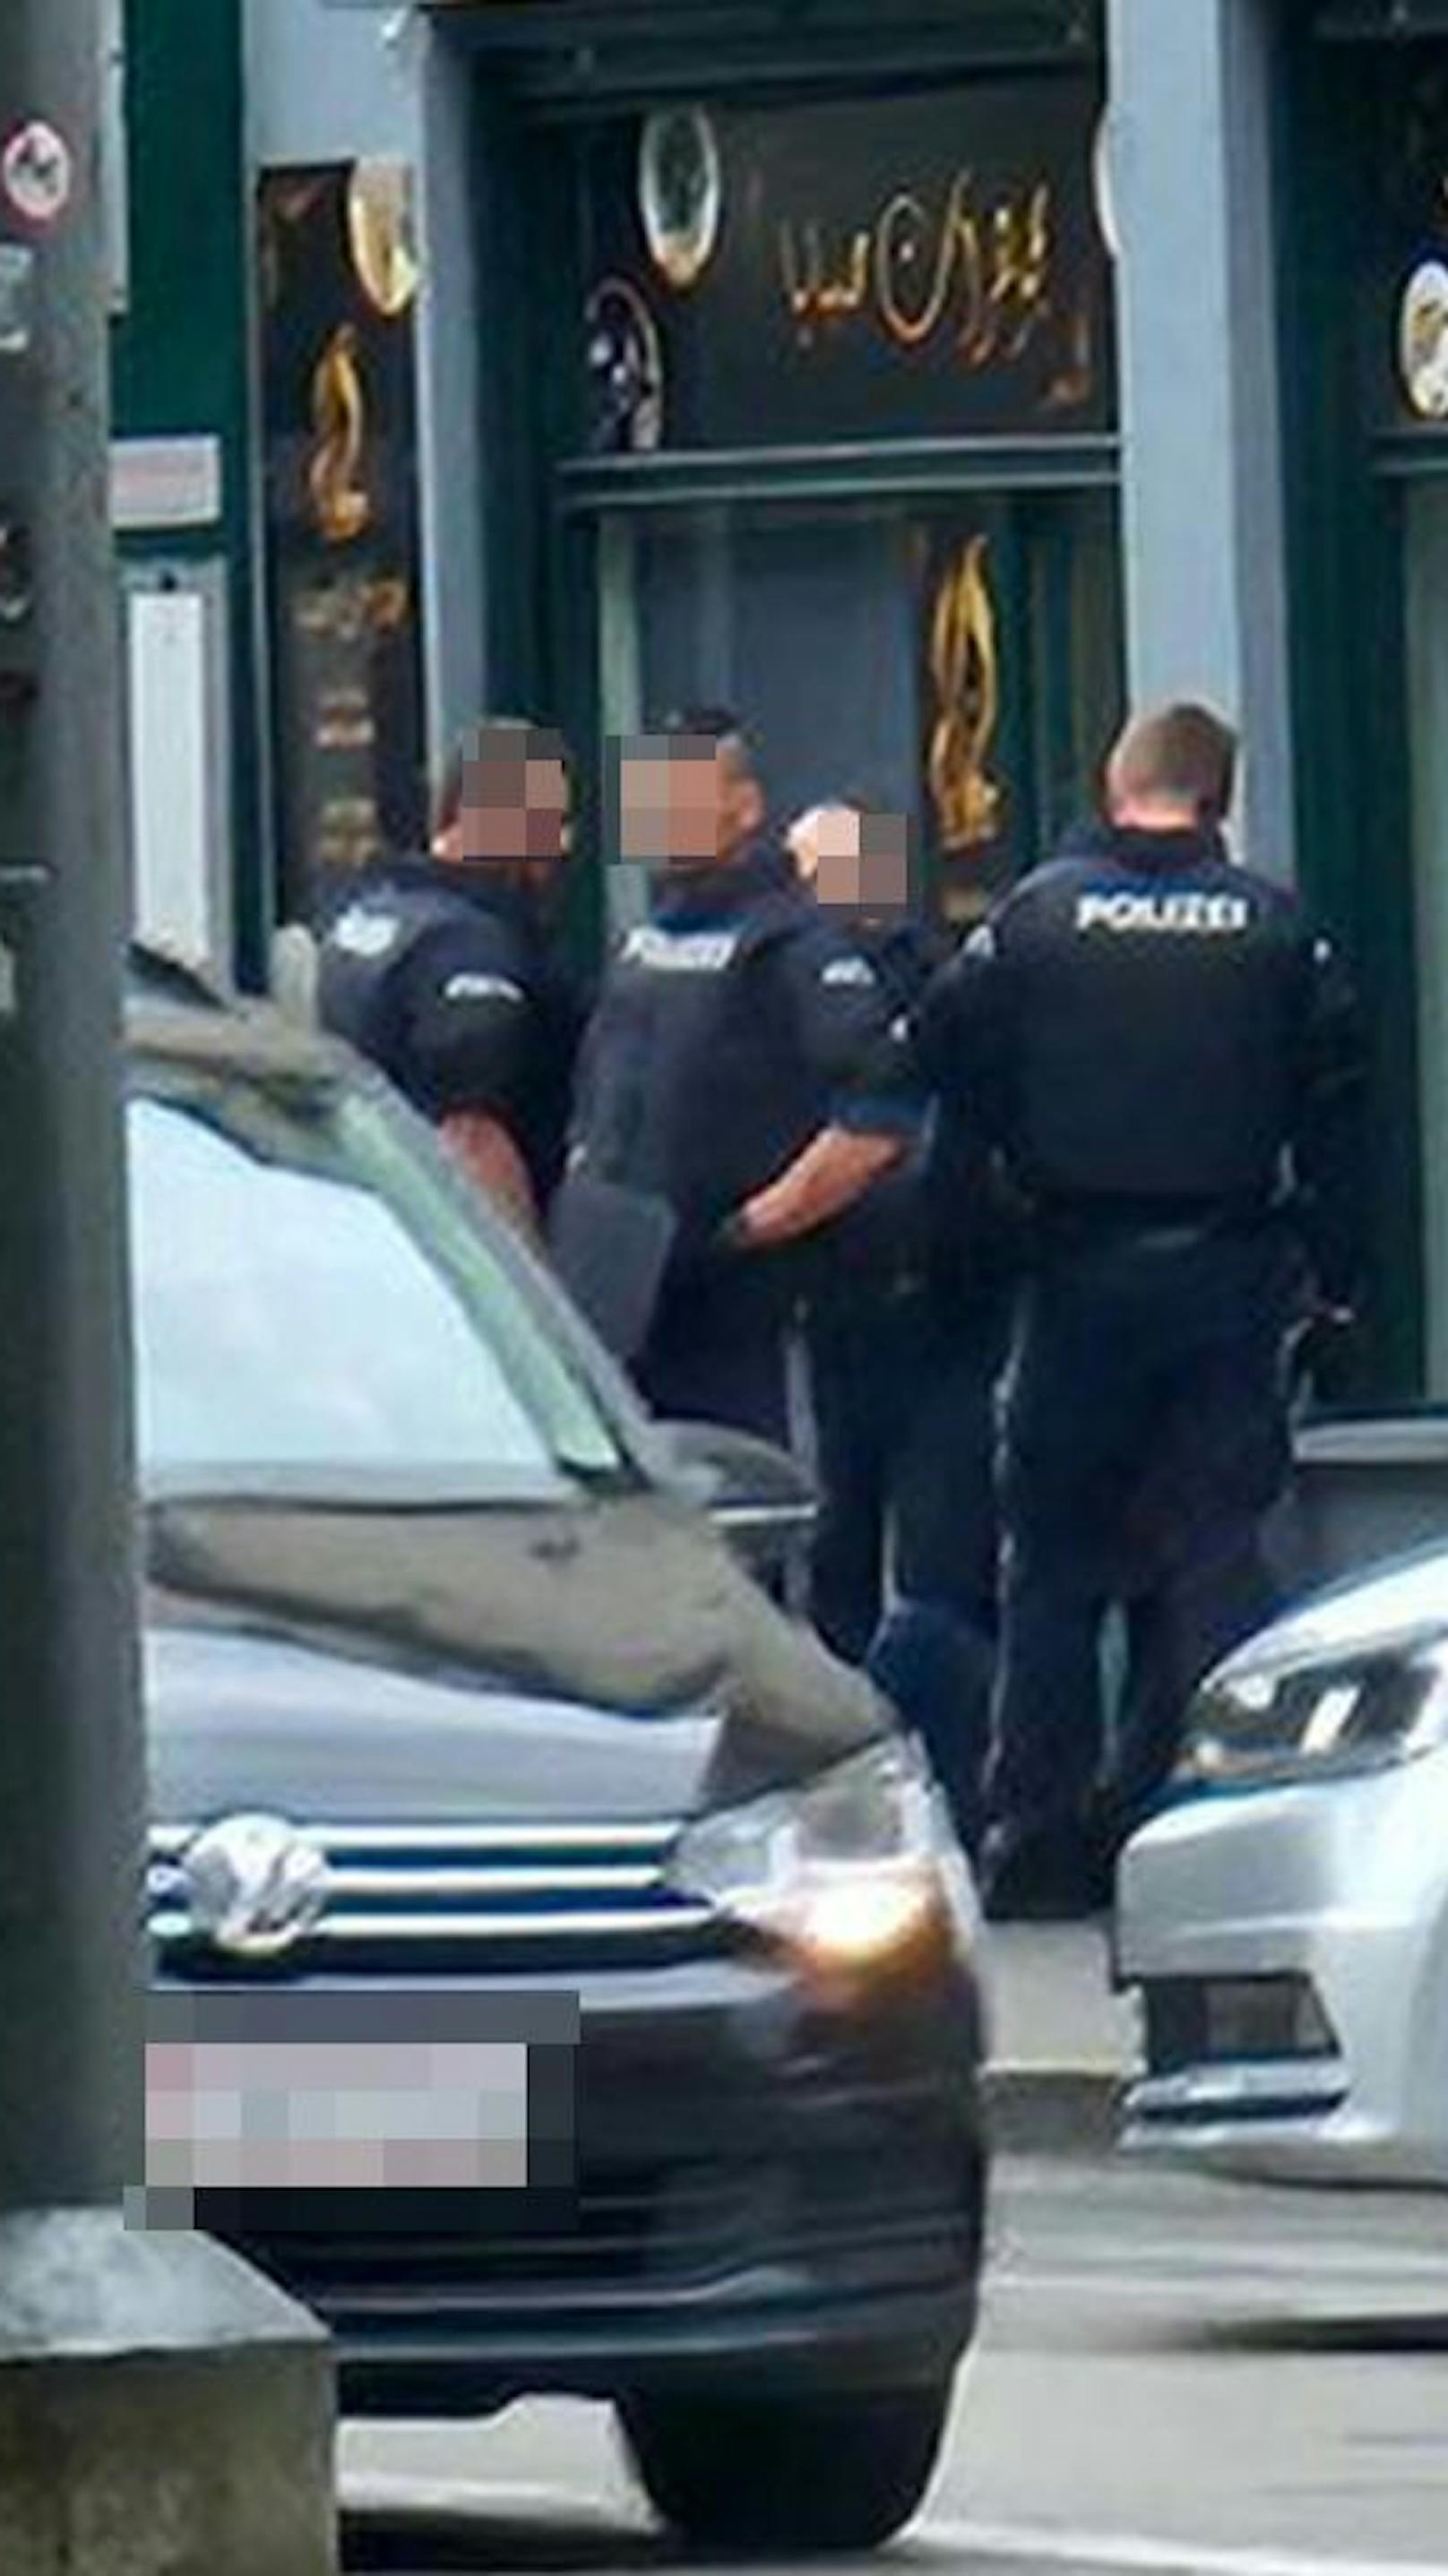 Mann bedroht Wiener auf offener Straße mit "Waffe"